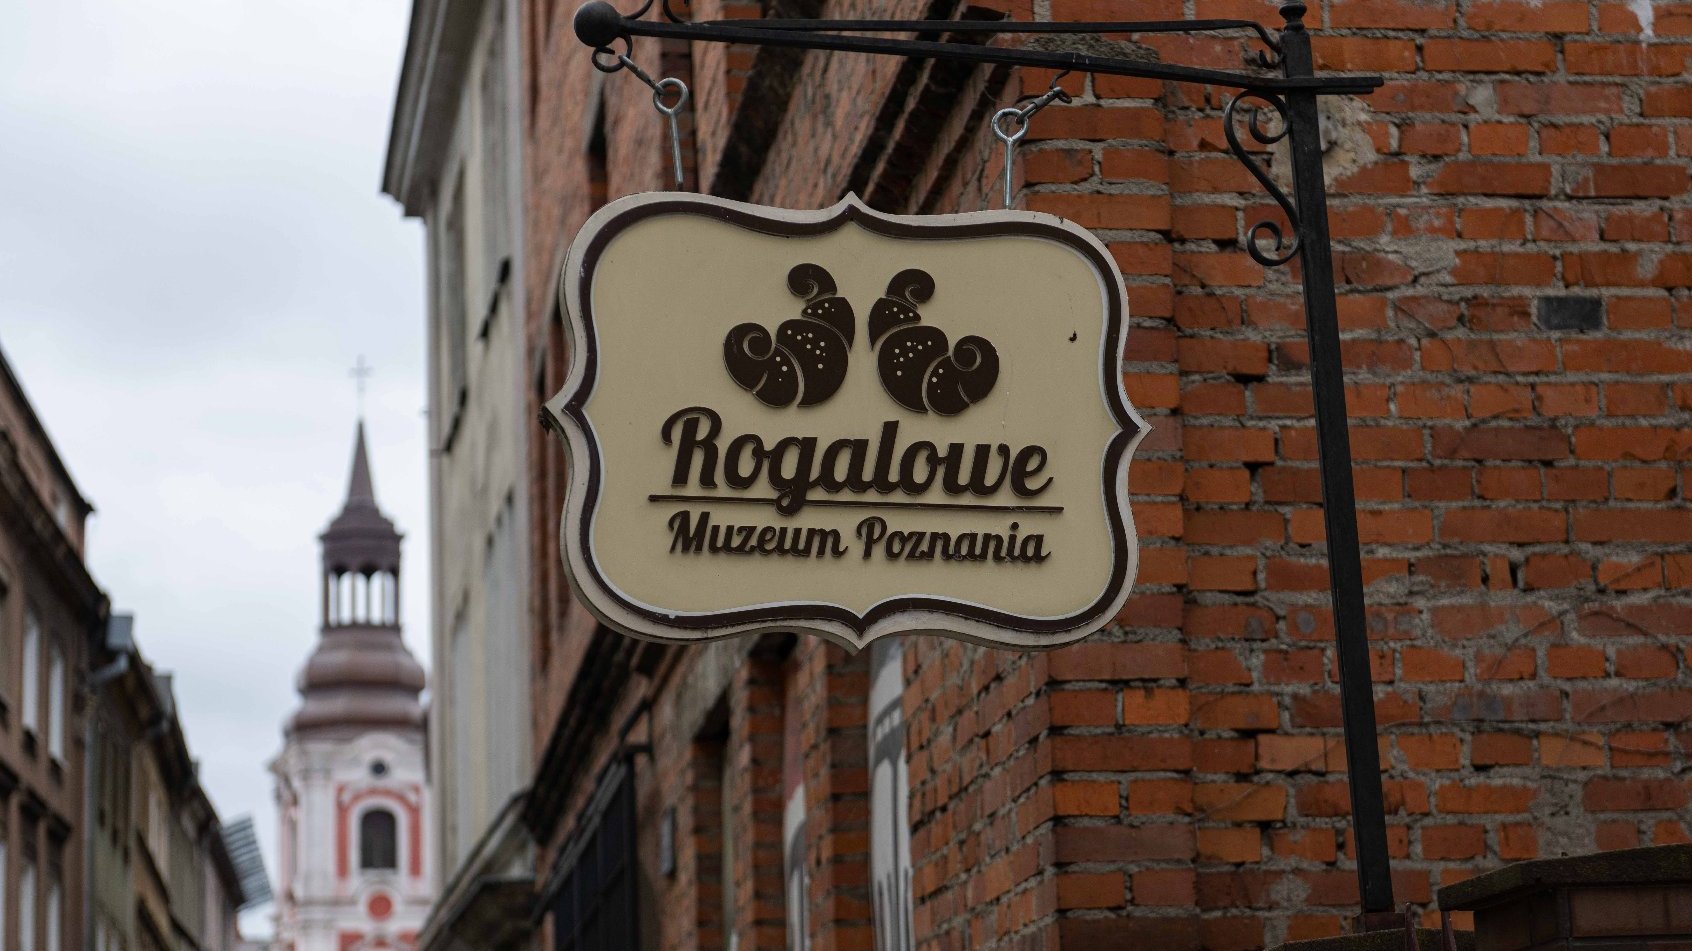 Galeria zdjęć przedstawia szyld semaforowy z napisem: Rogalowe Muzeum Poznania.